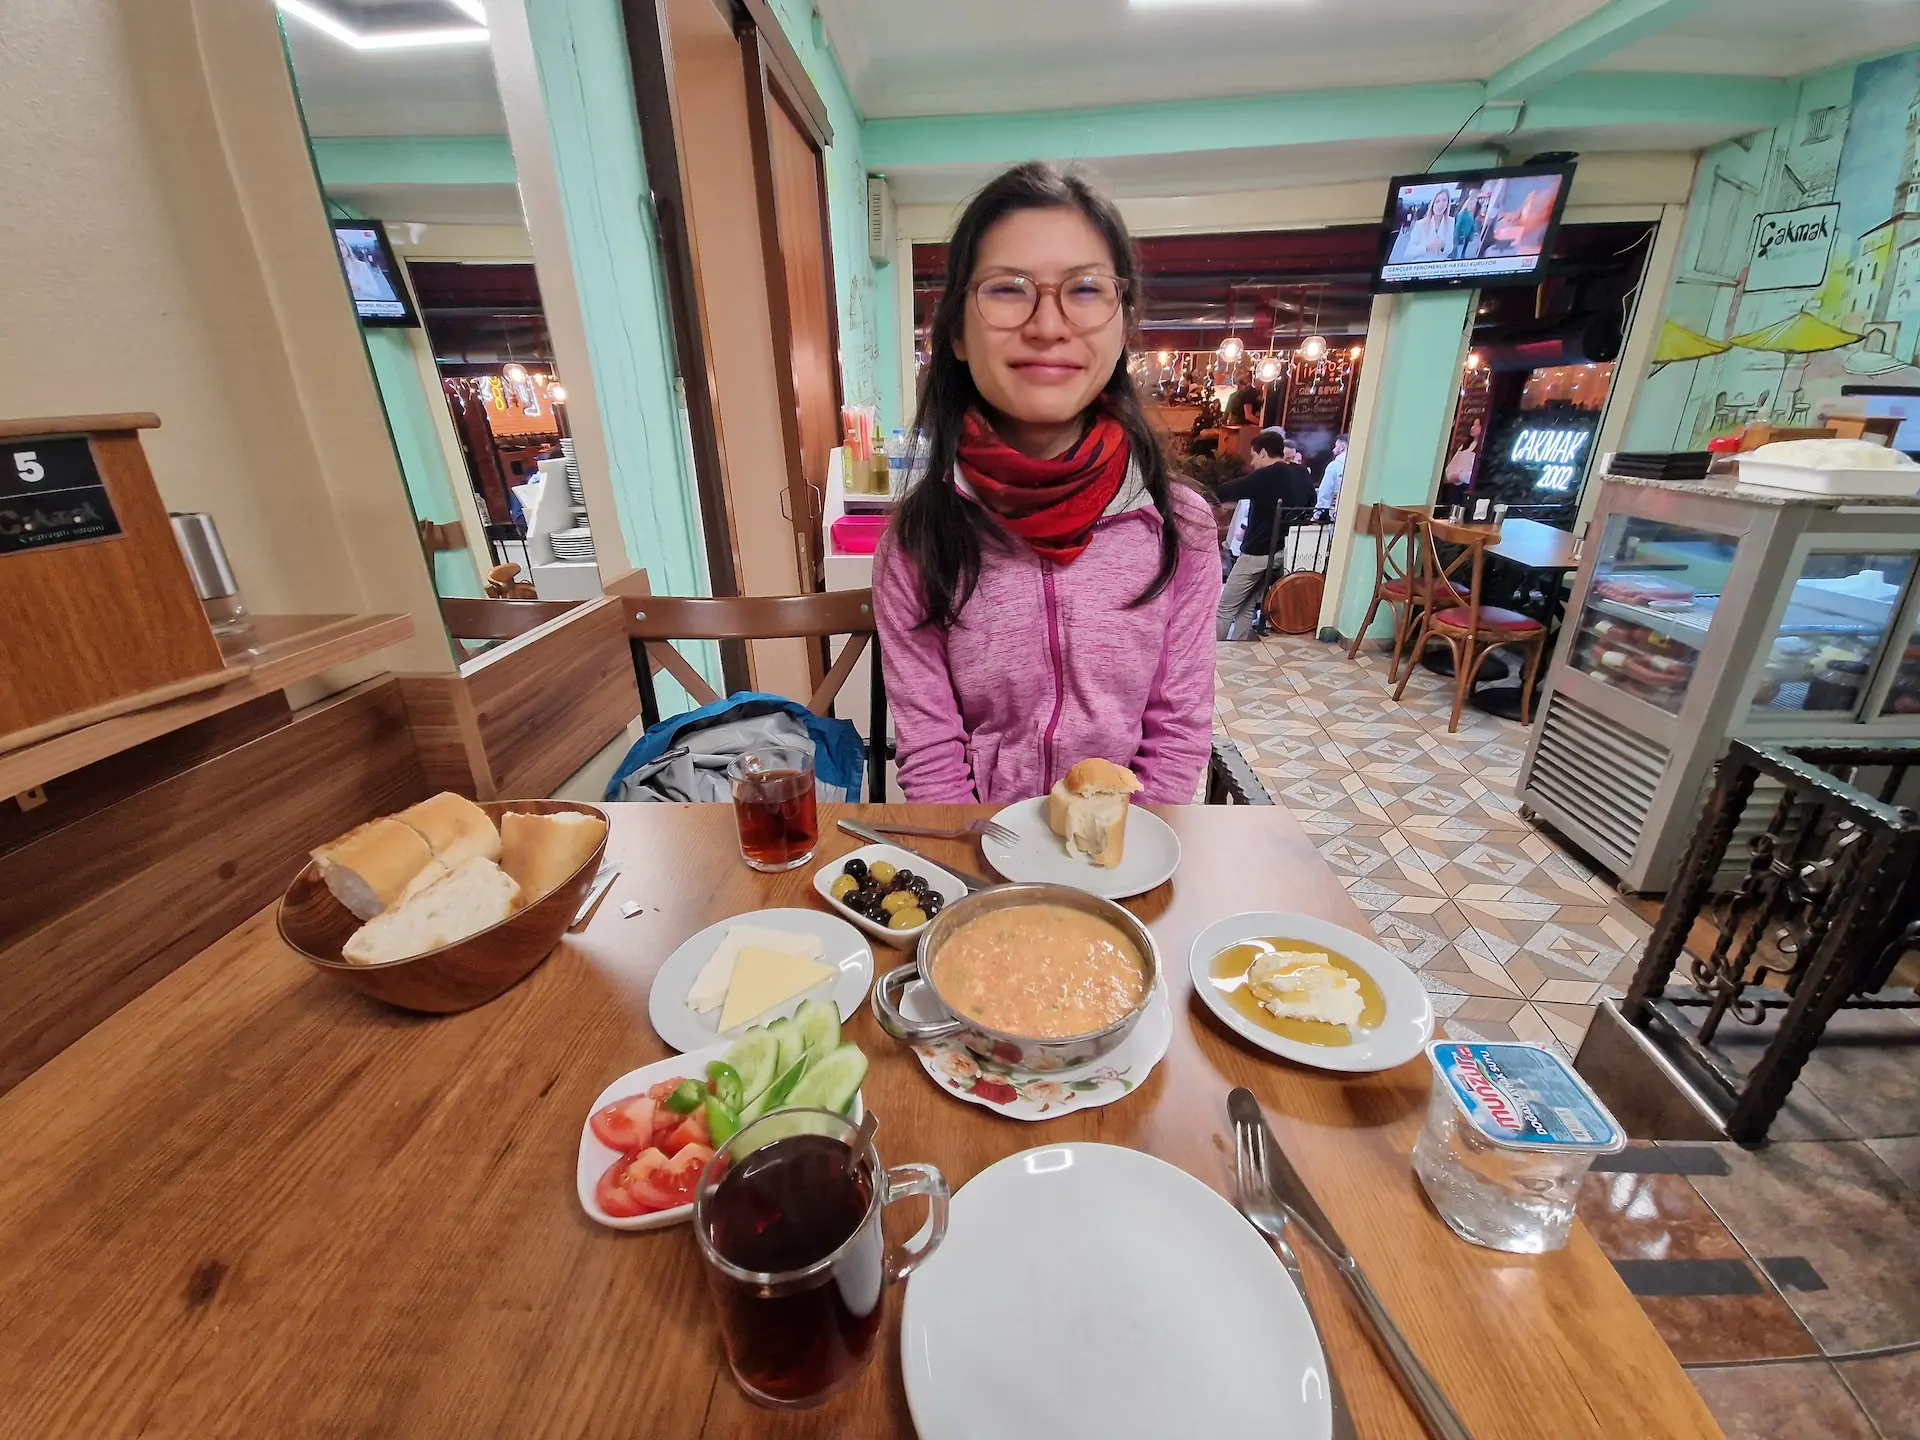 Clara devant un petit-déjeuner turc dans la ruelle du petit-déjeuner, on voit une omelette, des légumes crus, de la crème et miel, du fromage, des olives, du pain. Une télé est allumée en fond, on est presque seuls dans le restaurant.